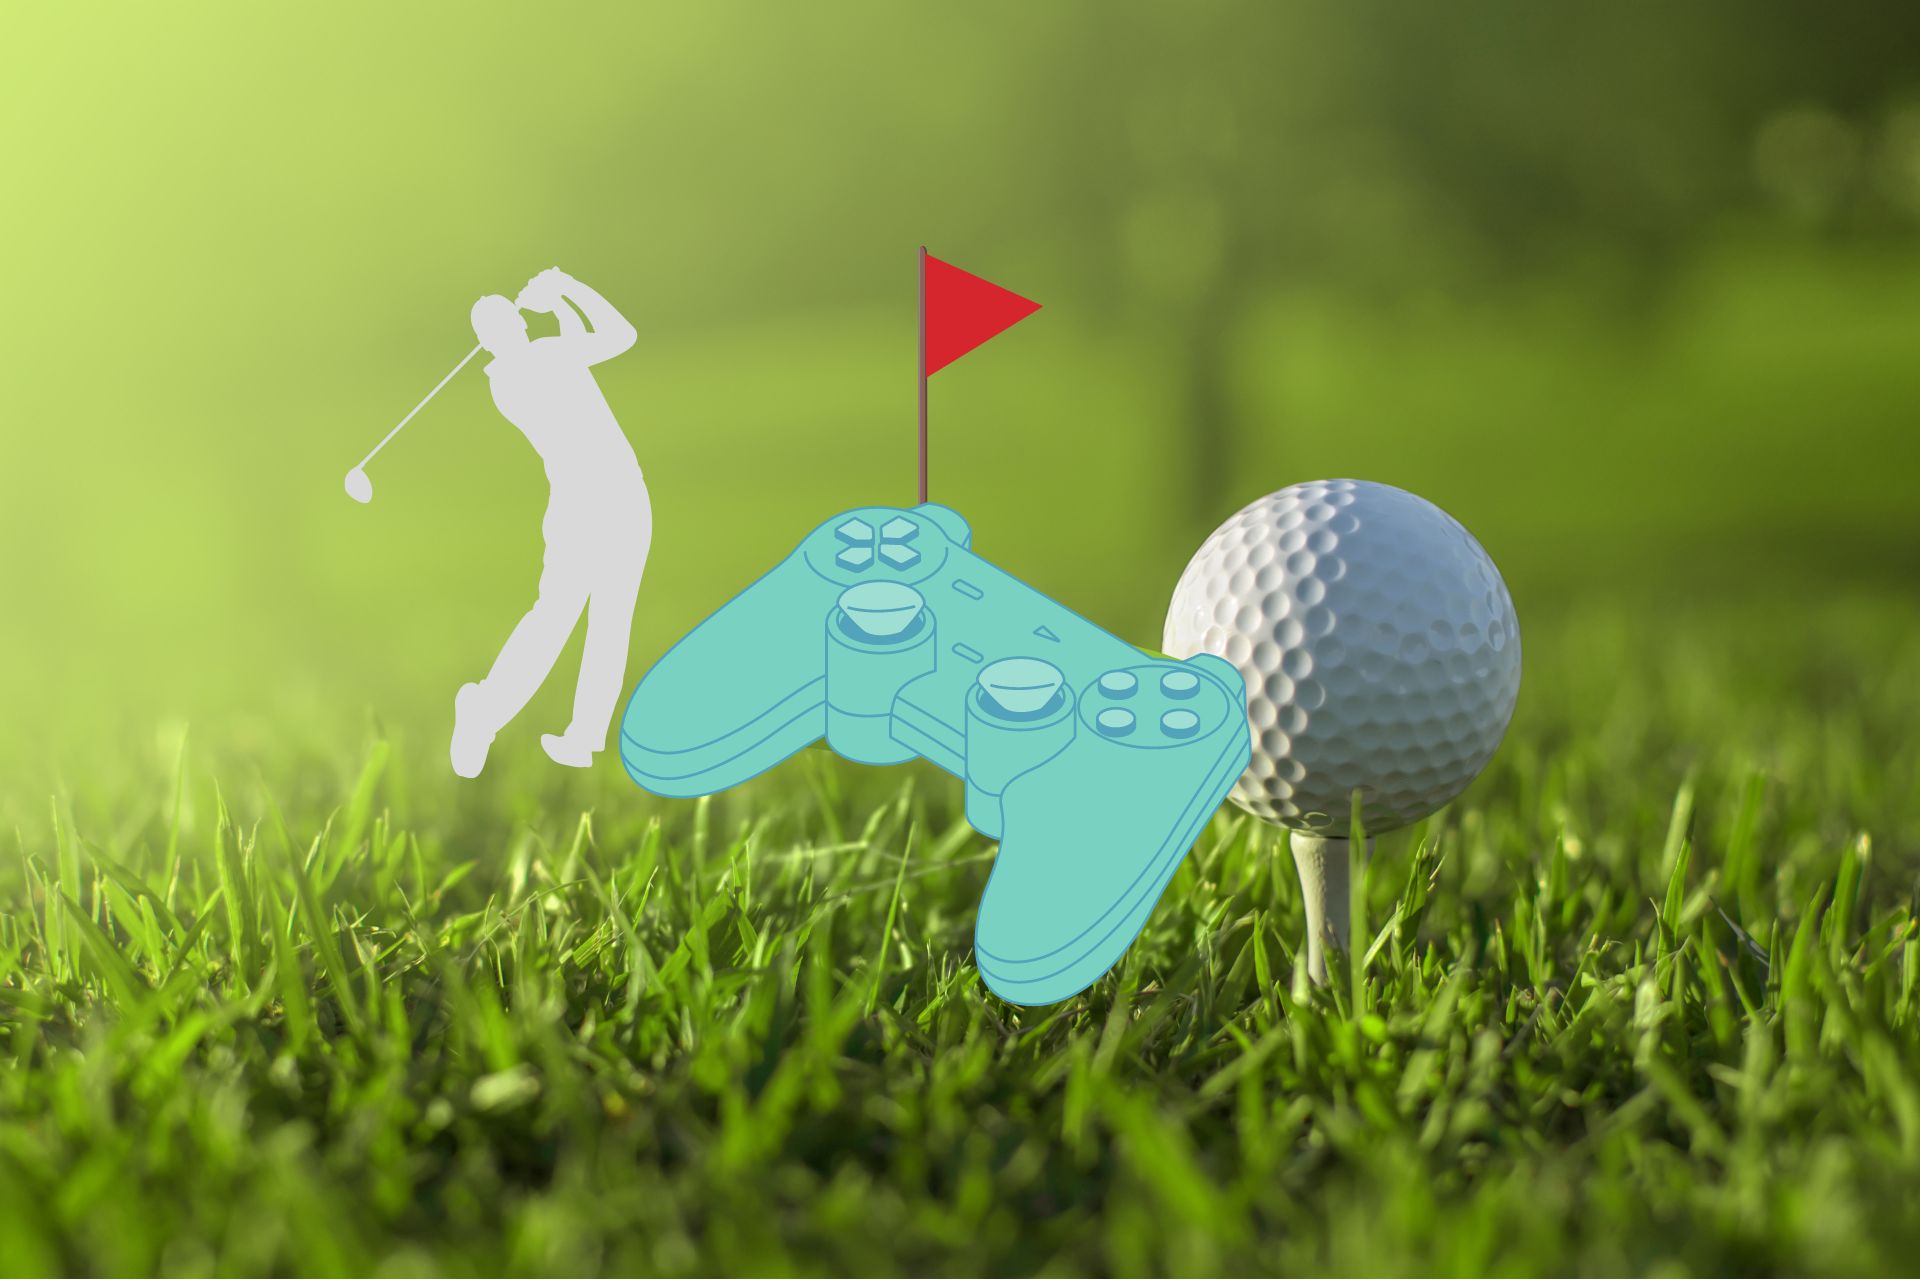 best online golf games featured